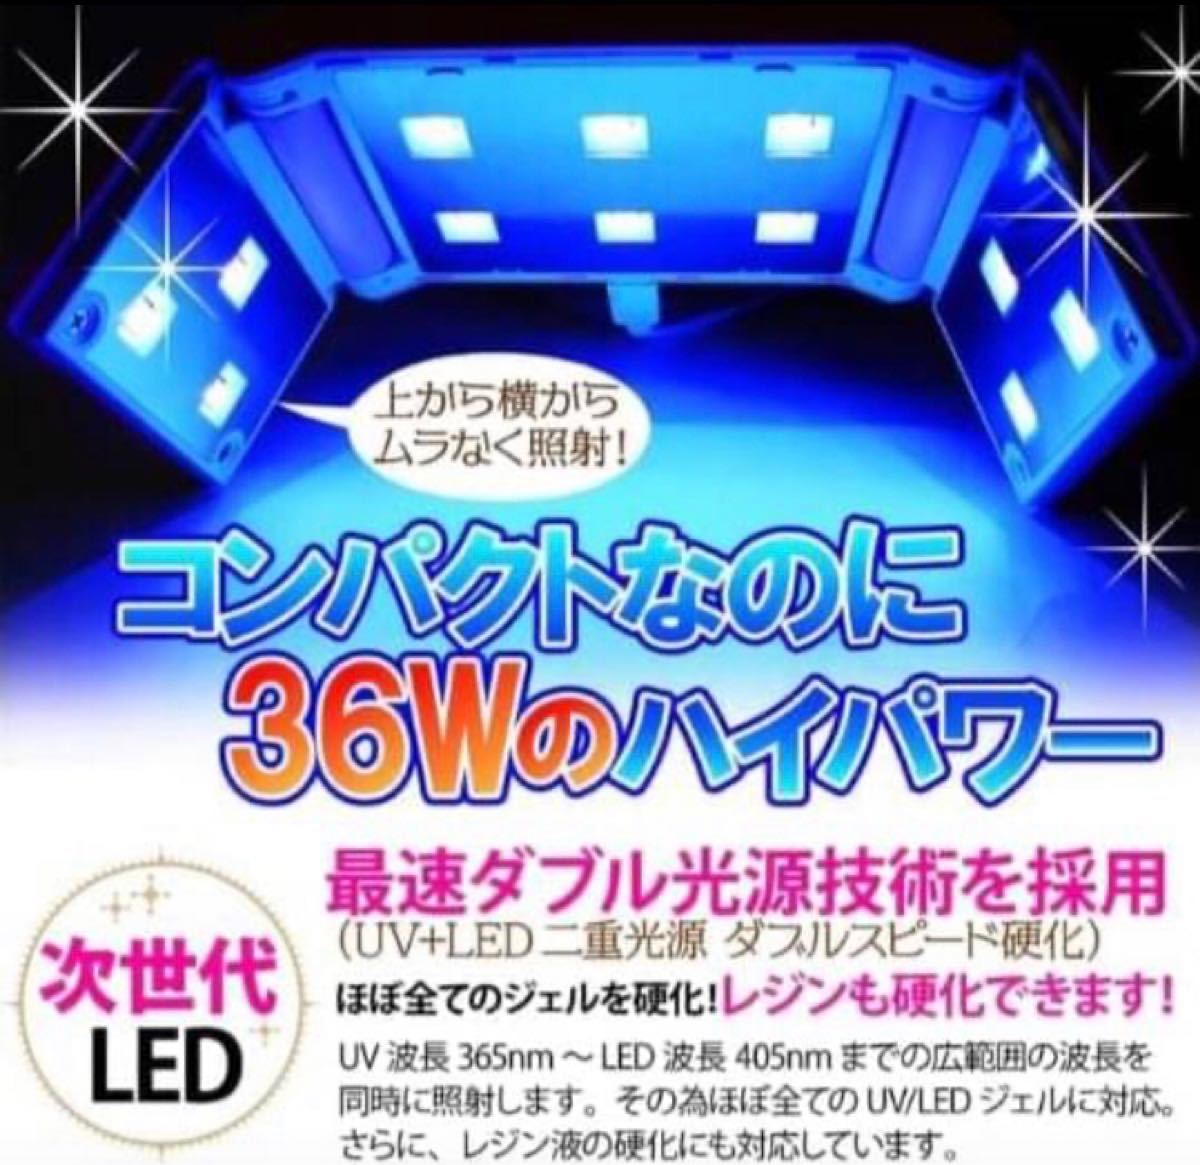 【超コンパクト】UV-LEDライト ジェルネイル UVレジン 硬化用ライト 36W LEDライト UVライト